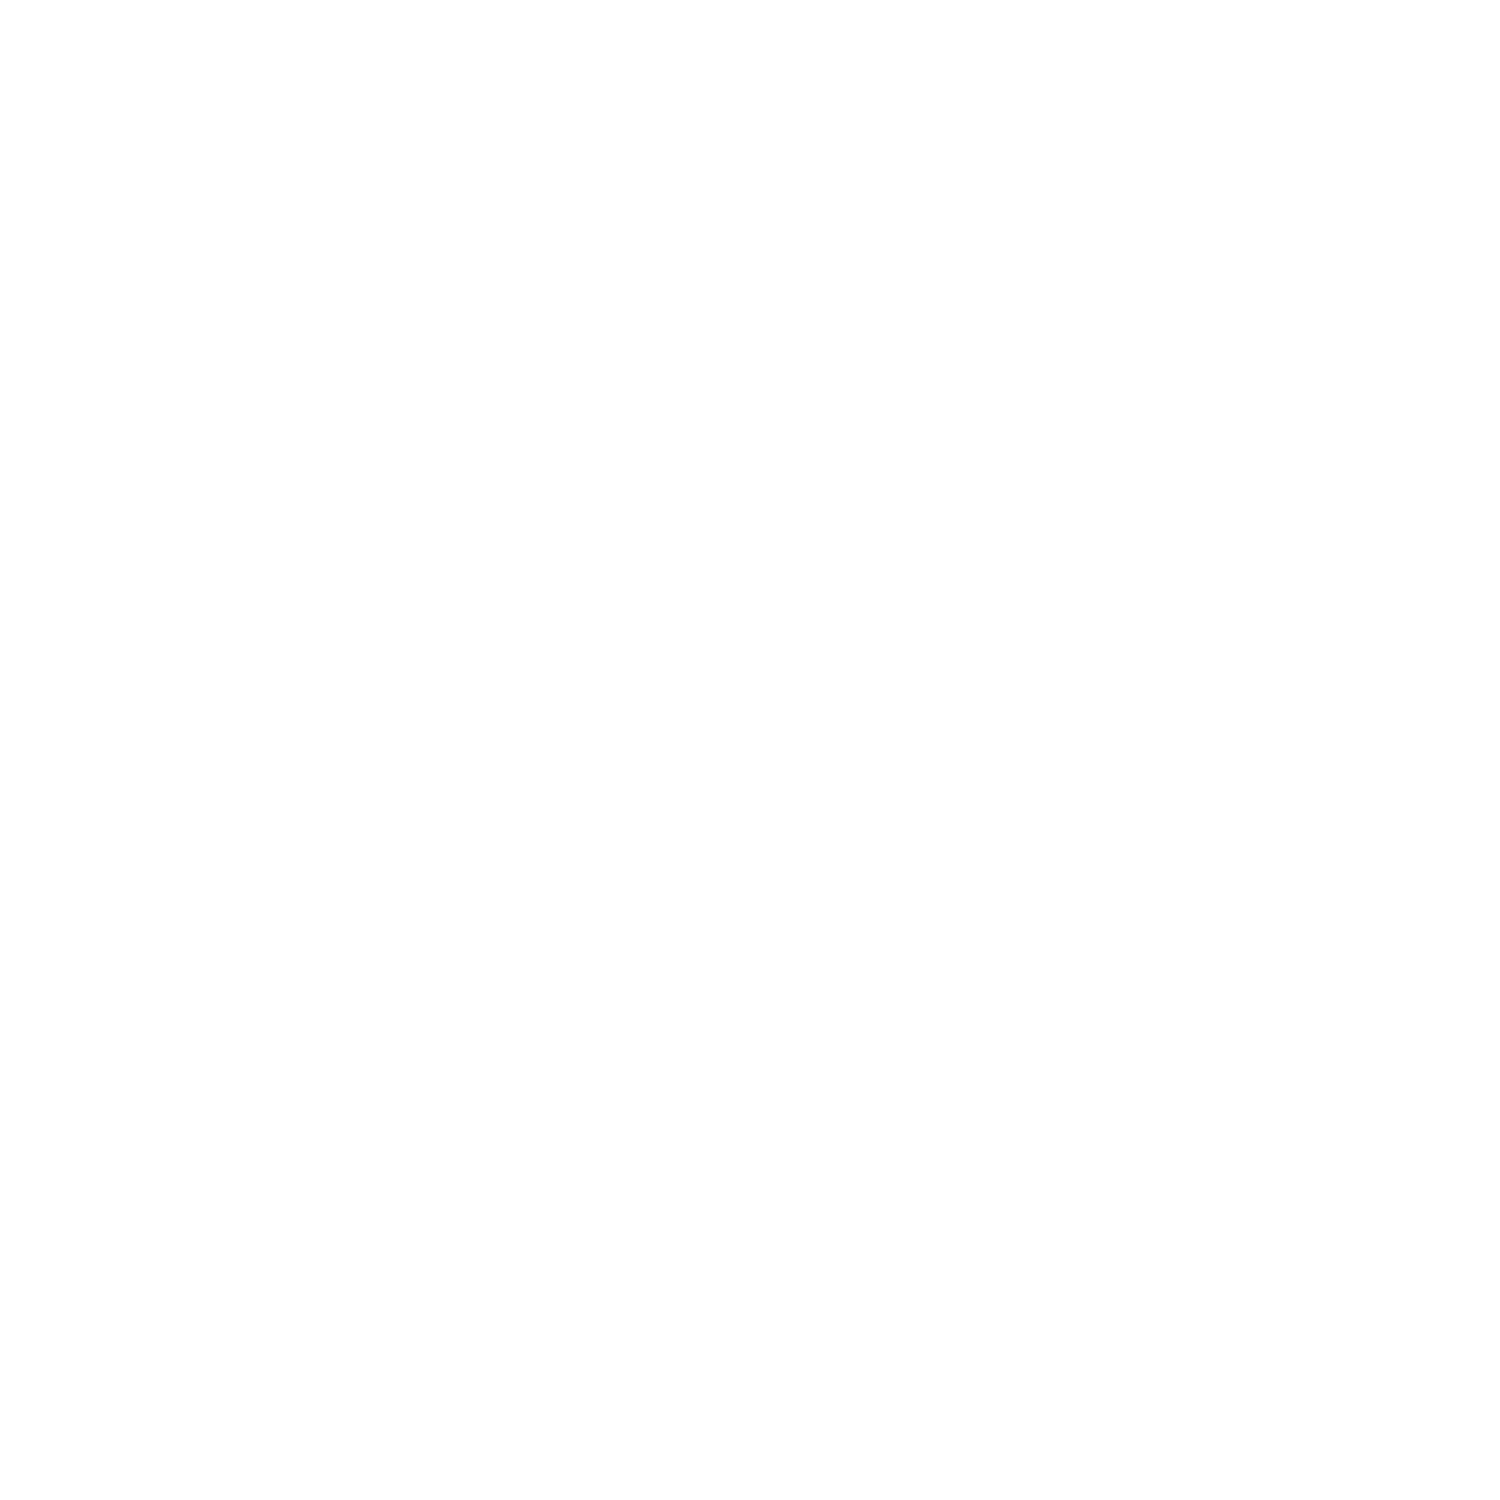 Schagerl